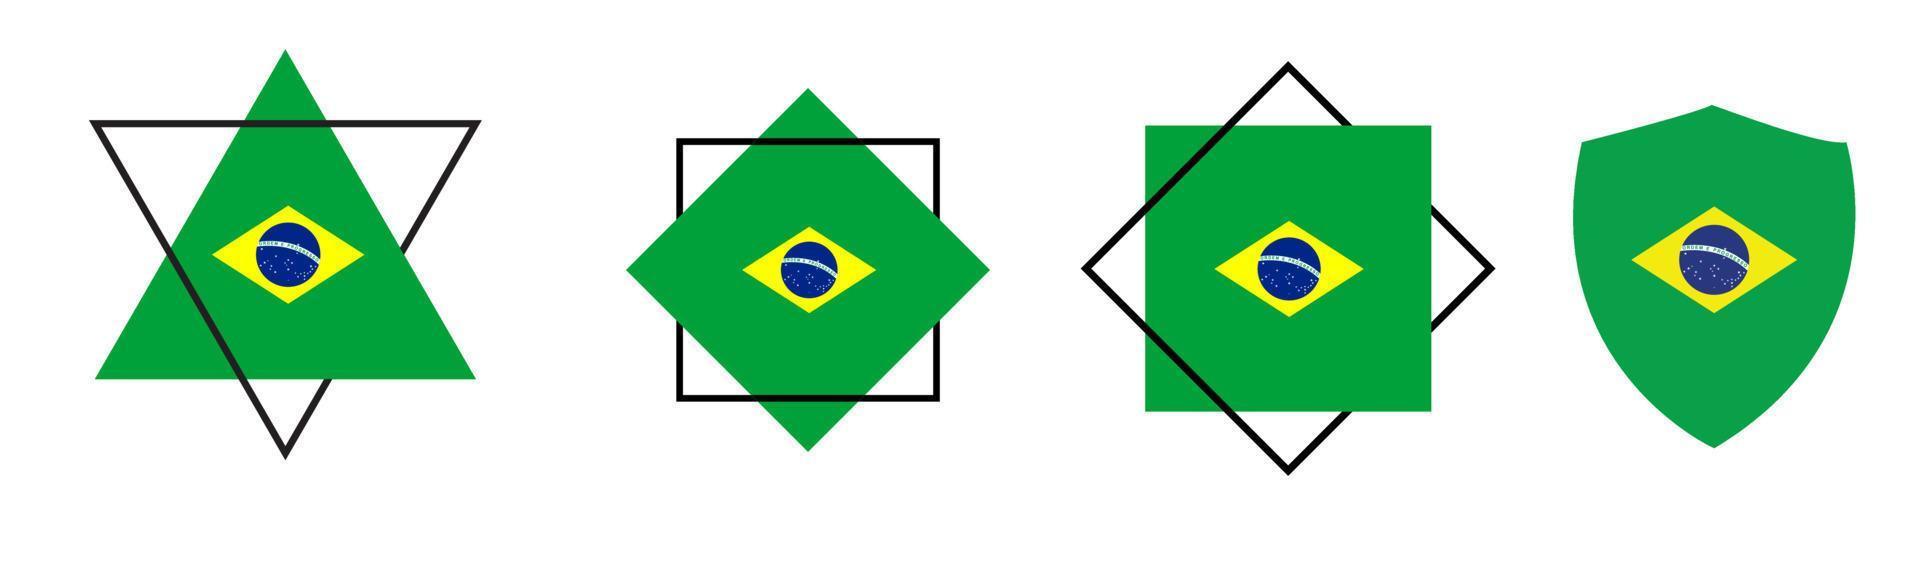 bandeira do brasil. ilustração vetorial. bandeira nacional do brasil definir ilustração vetorial. ilustração da bandeira do brasil. bandeira nacional oficial do brasil. vetor